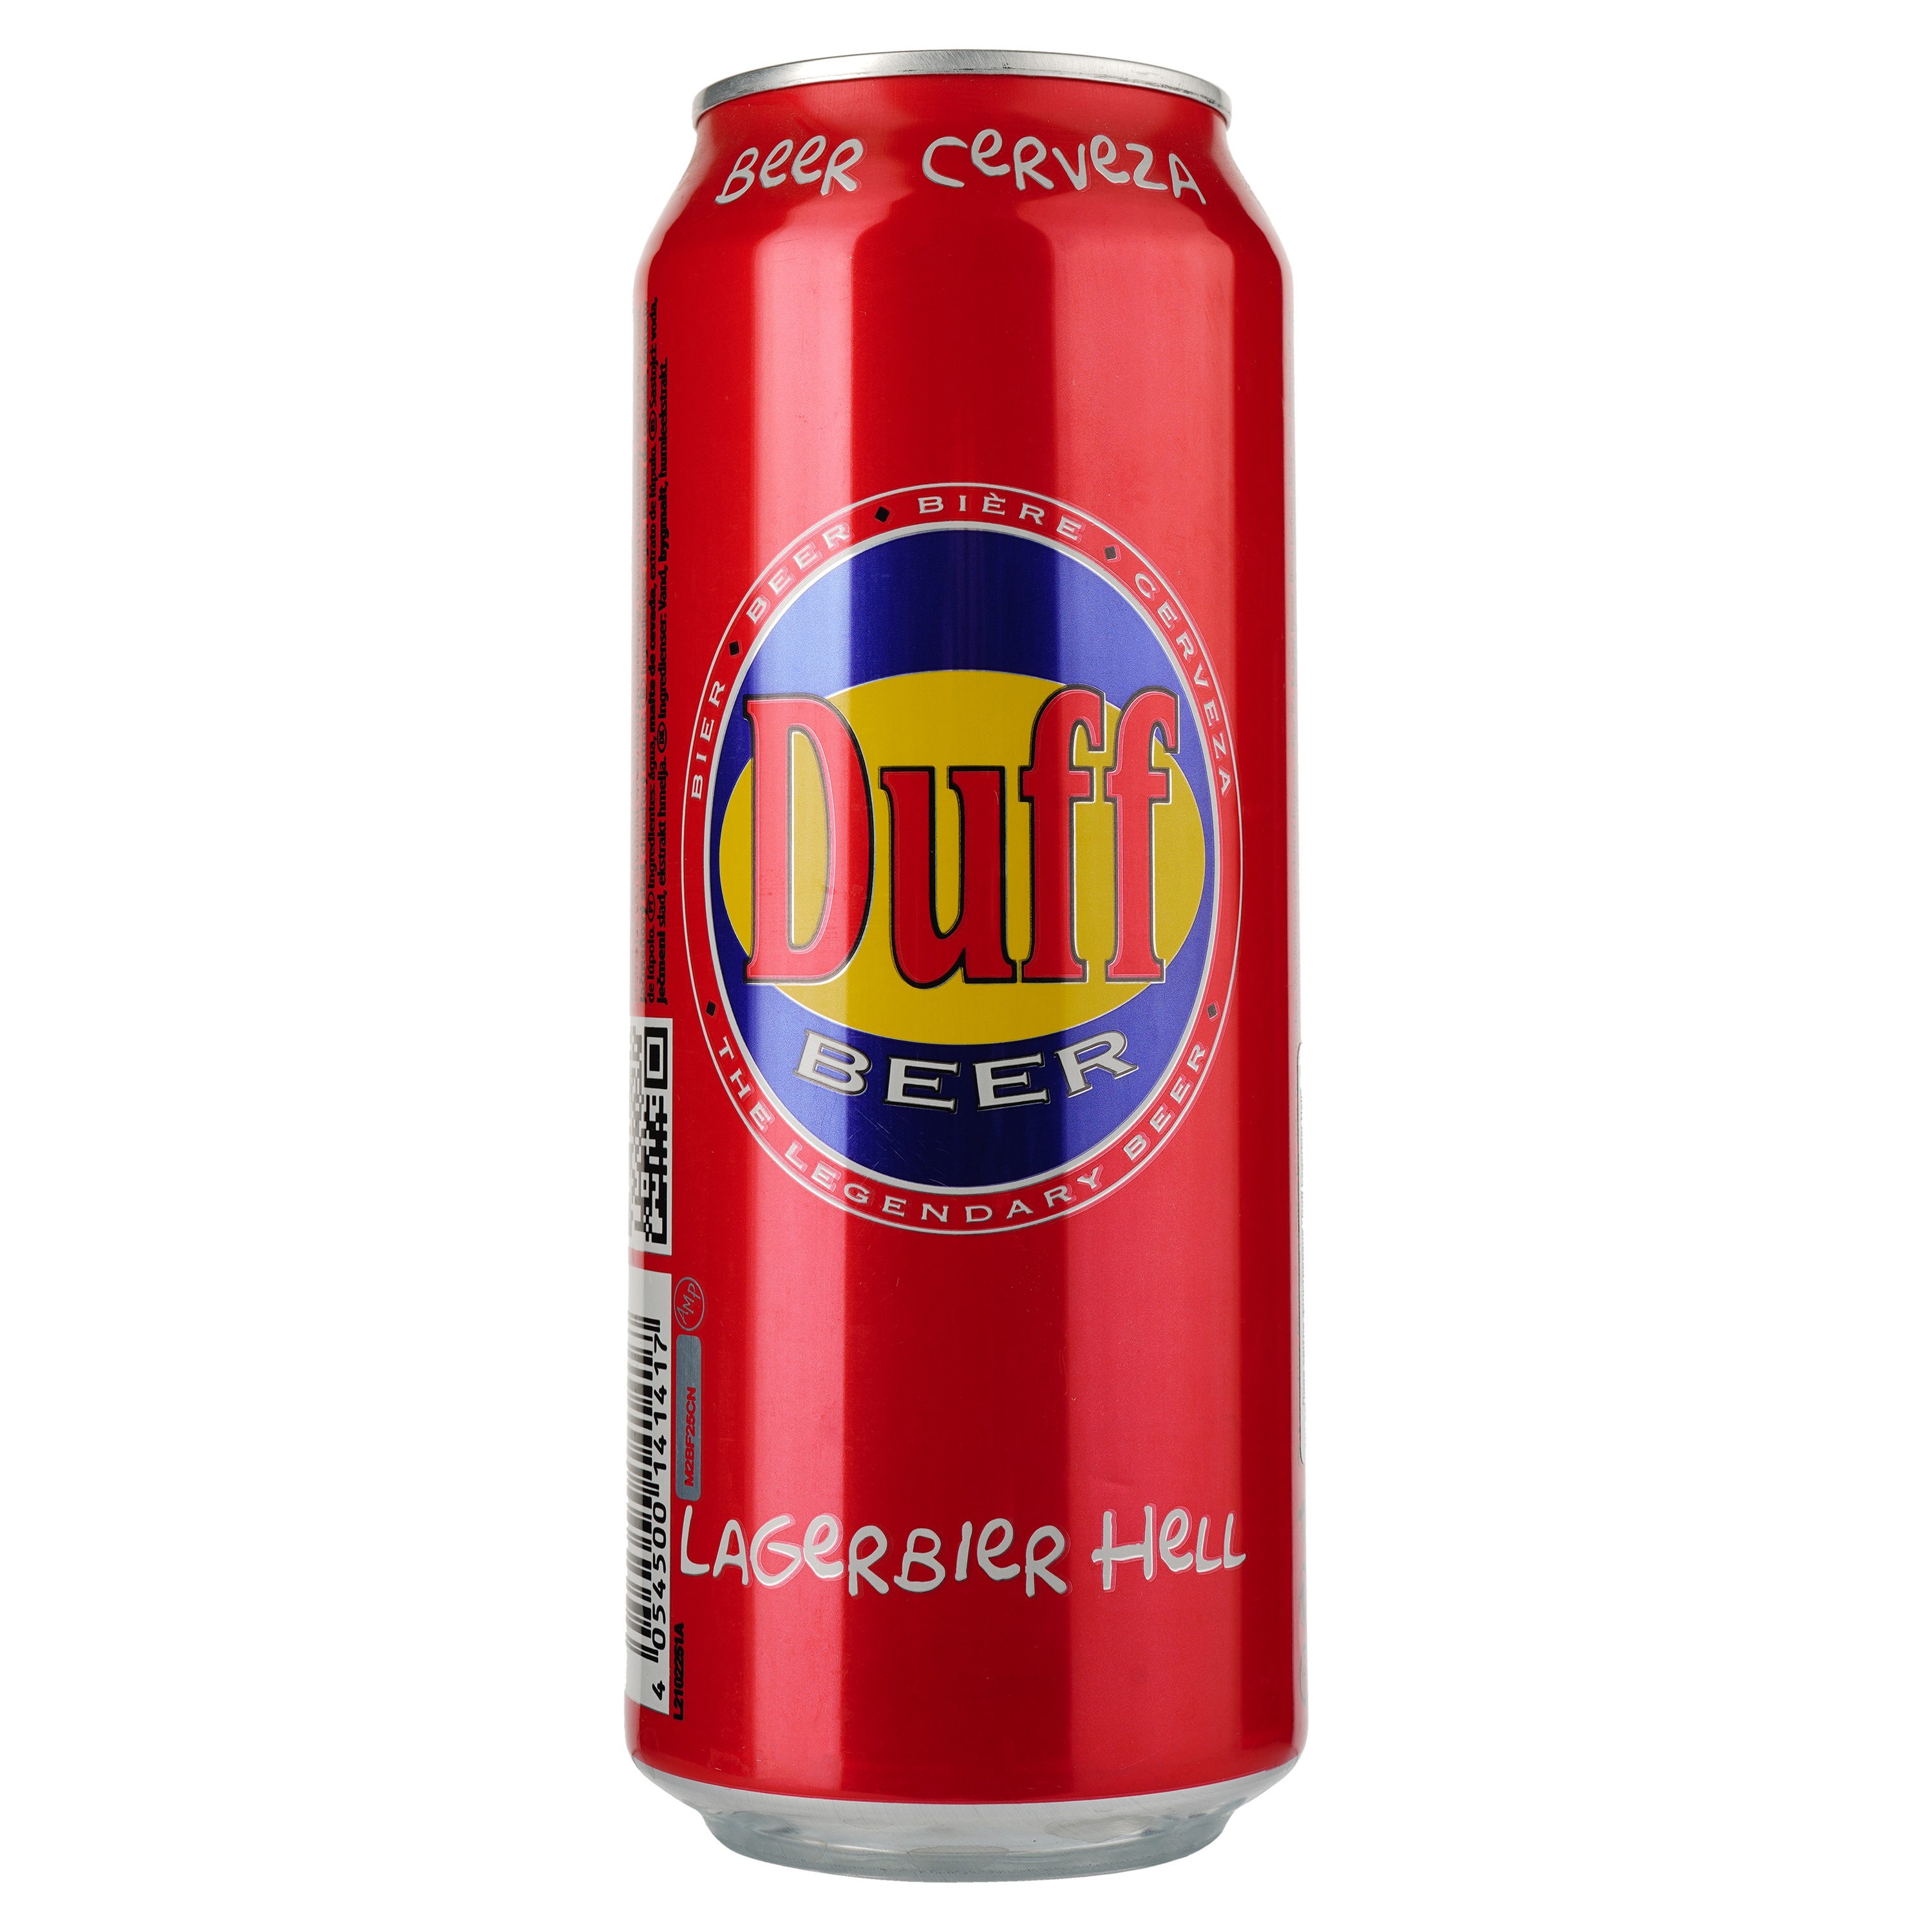 Пиво Duff Lagerbier Hell светлое фильтрованное 4.9% ж/б 0.5 л. - фото 1